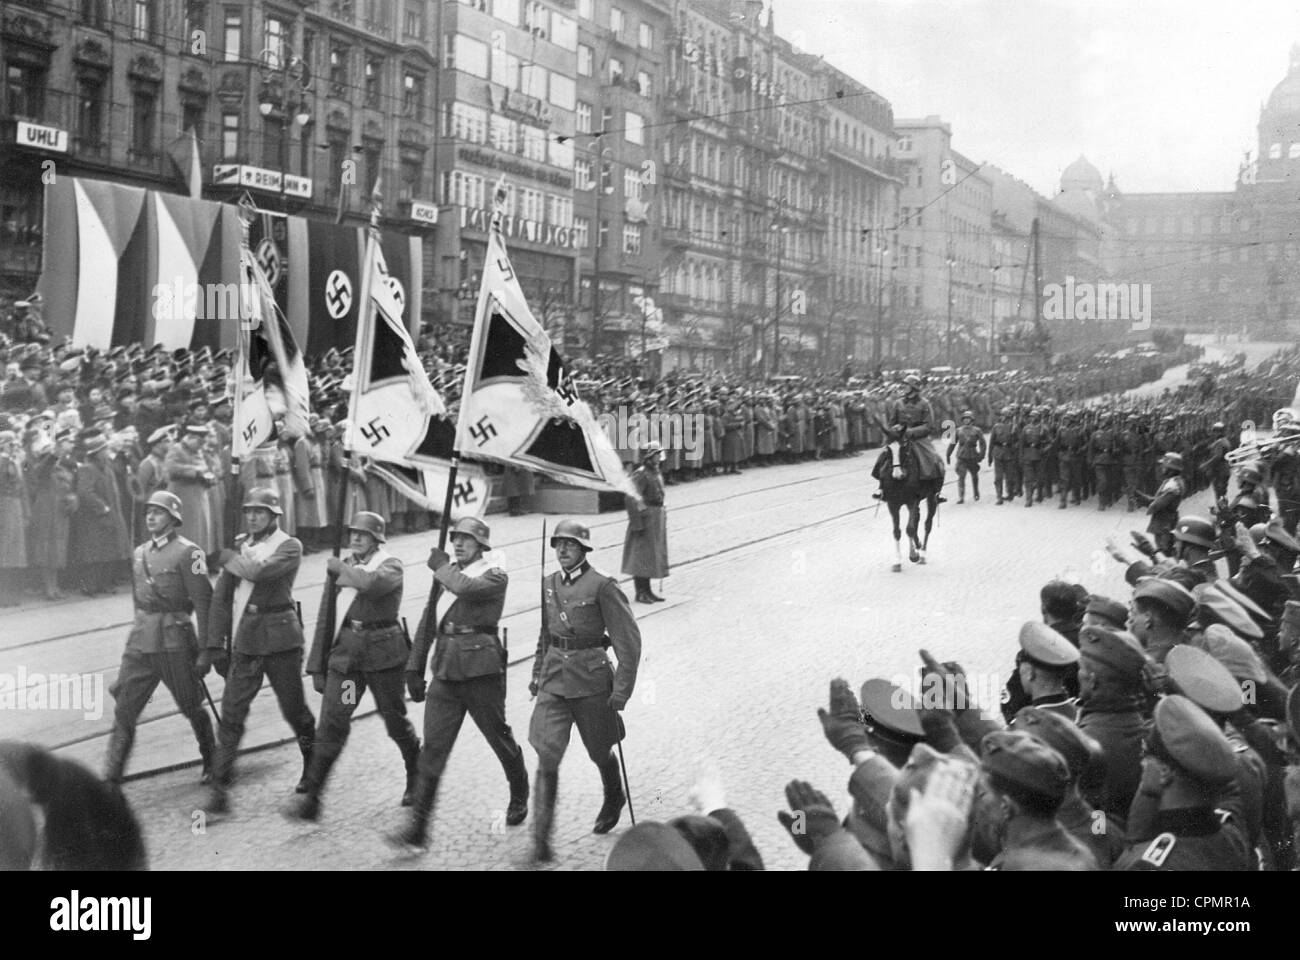 15 mars 1939 La Wehrmarcht entre à Prague . Defile-des-troupes-allemandes-a-prague-1939-cpmr1a